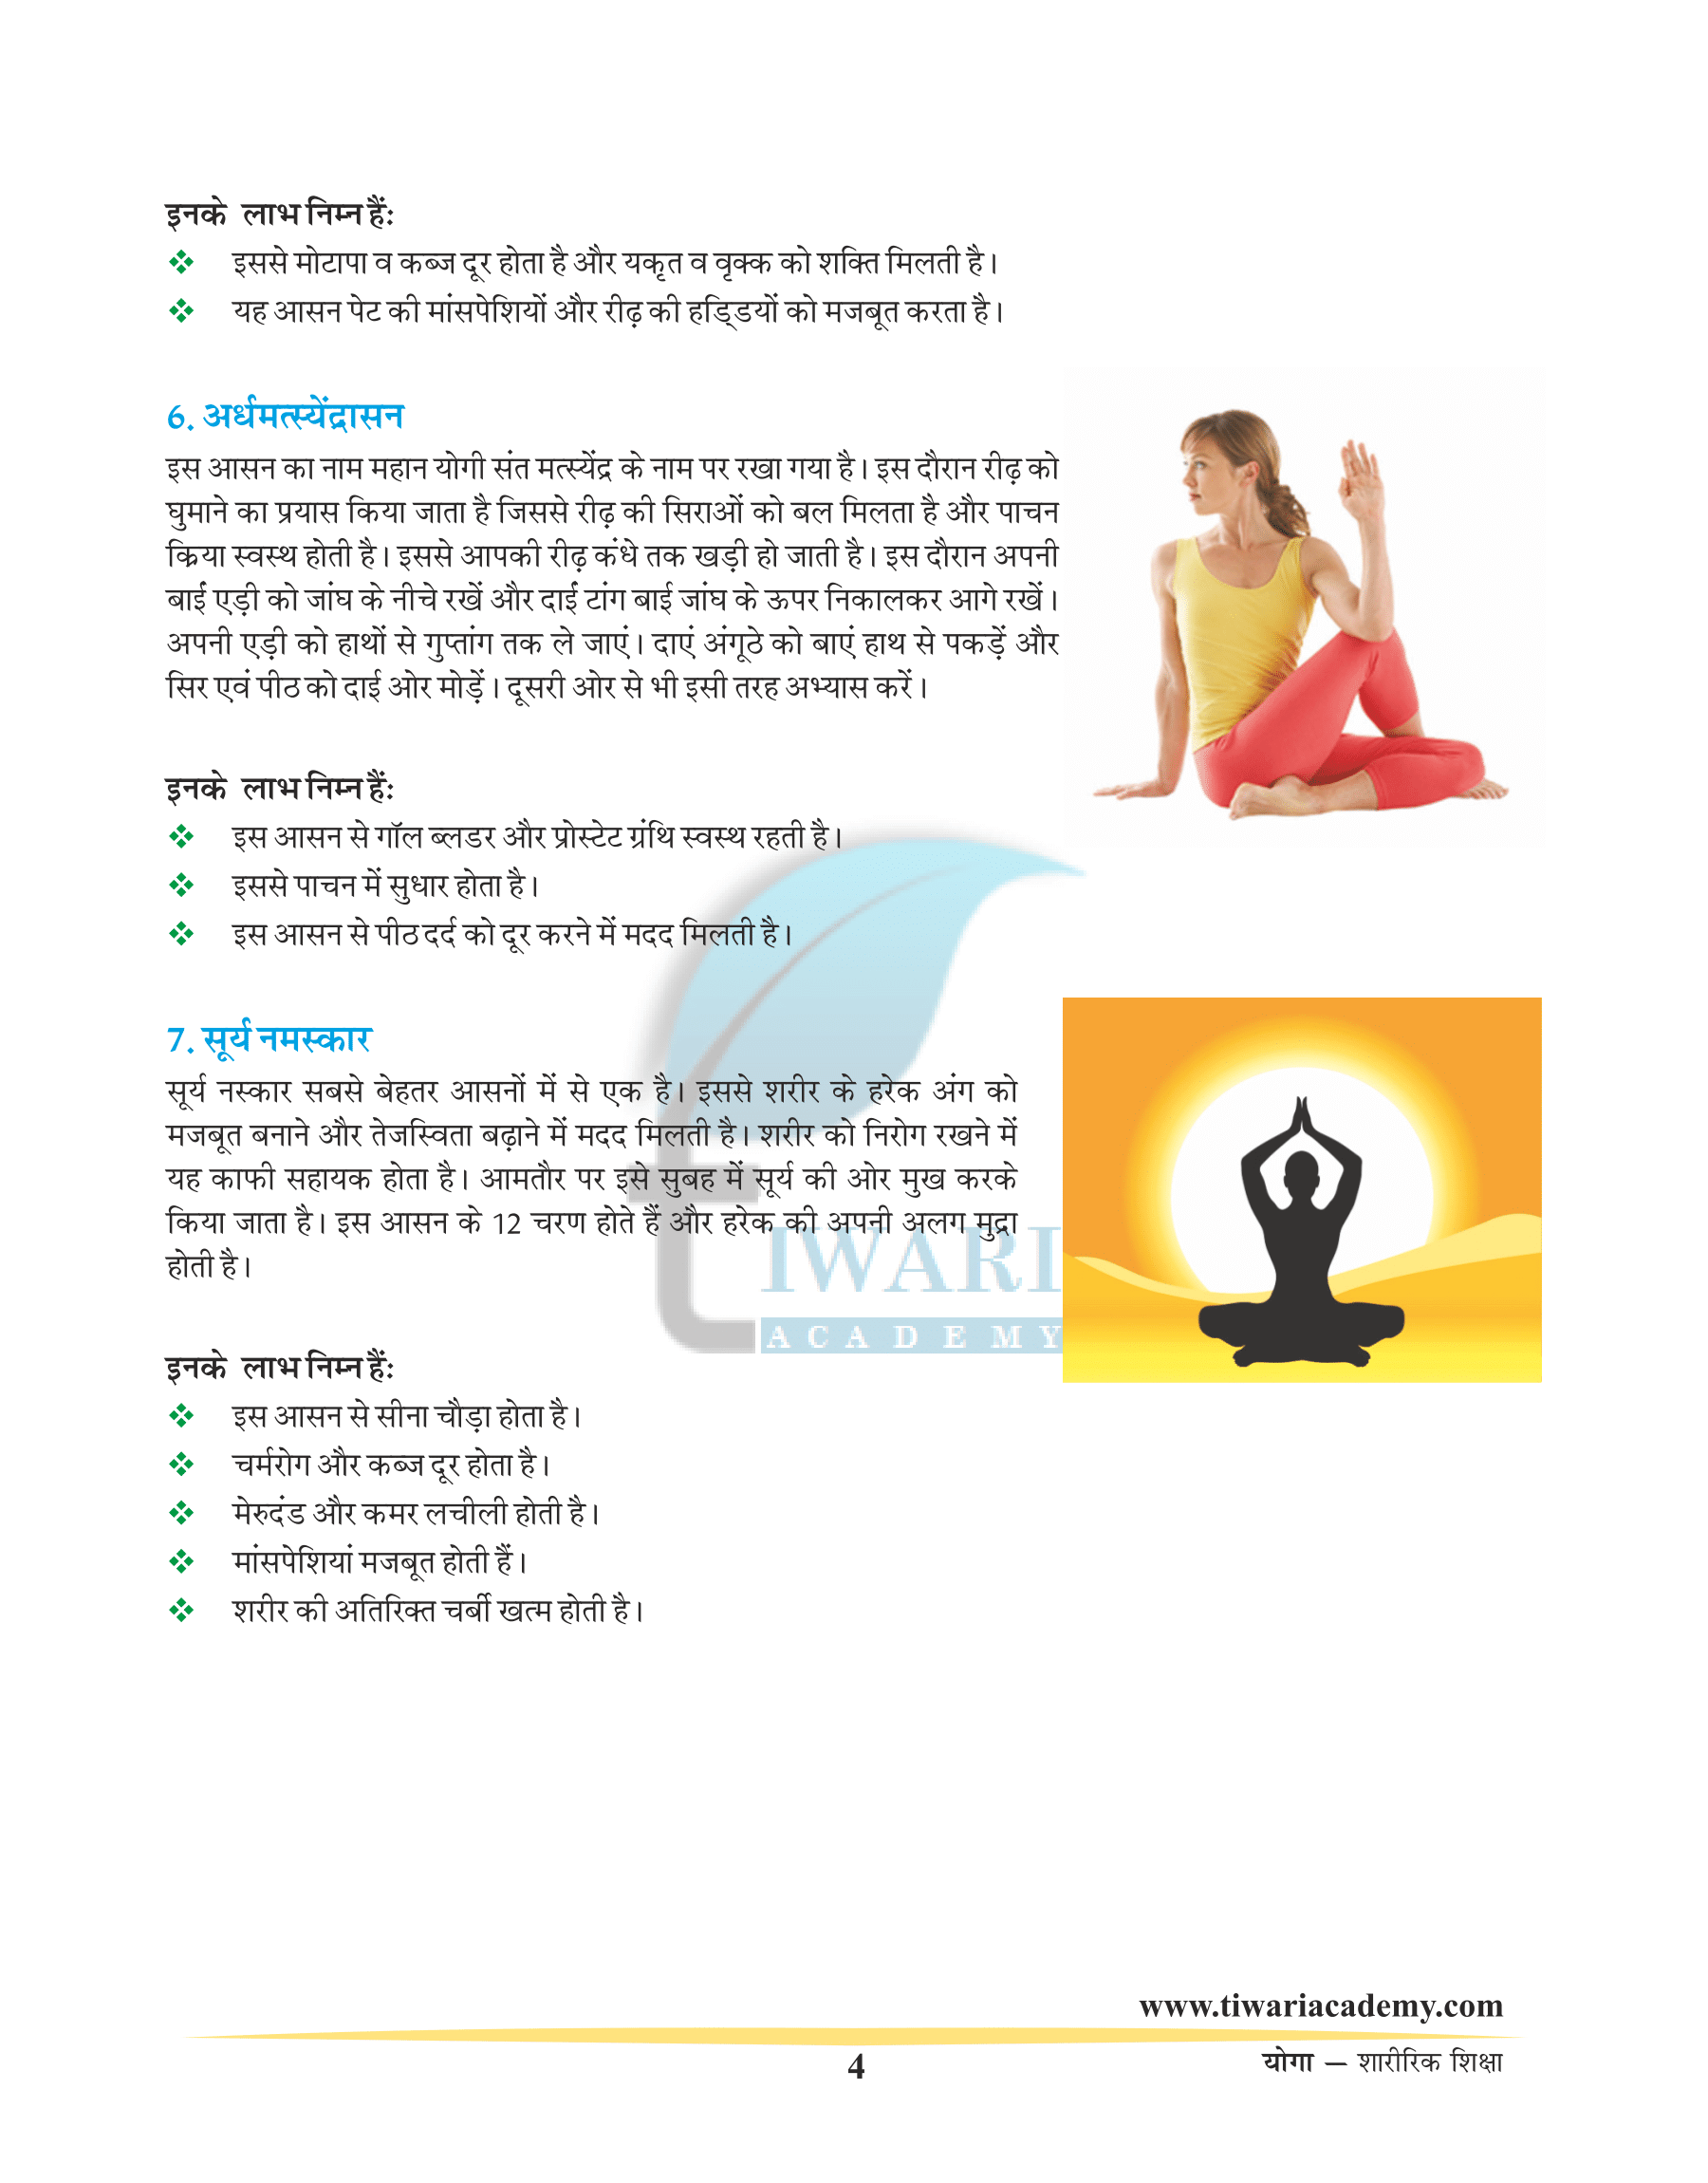 Purna yoga — Yoga pancadasi - DK Printworld (P) Ltd.